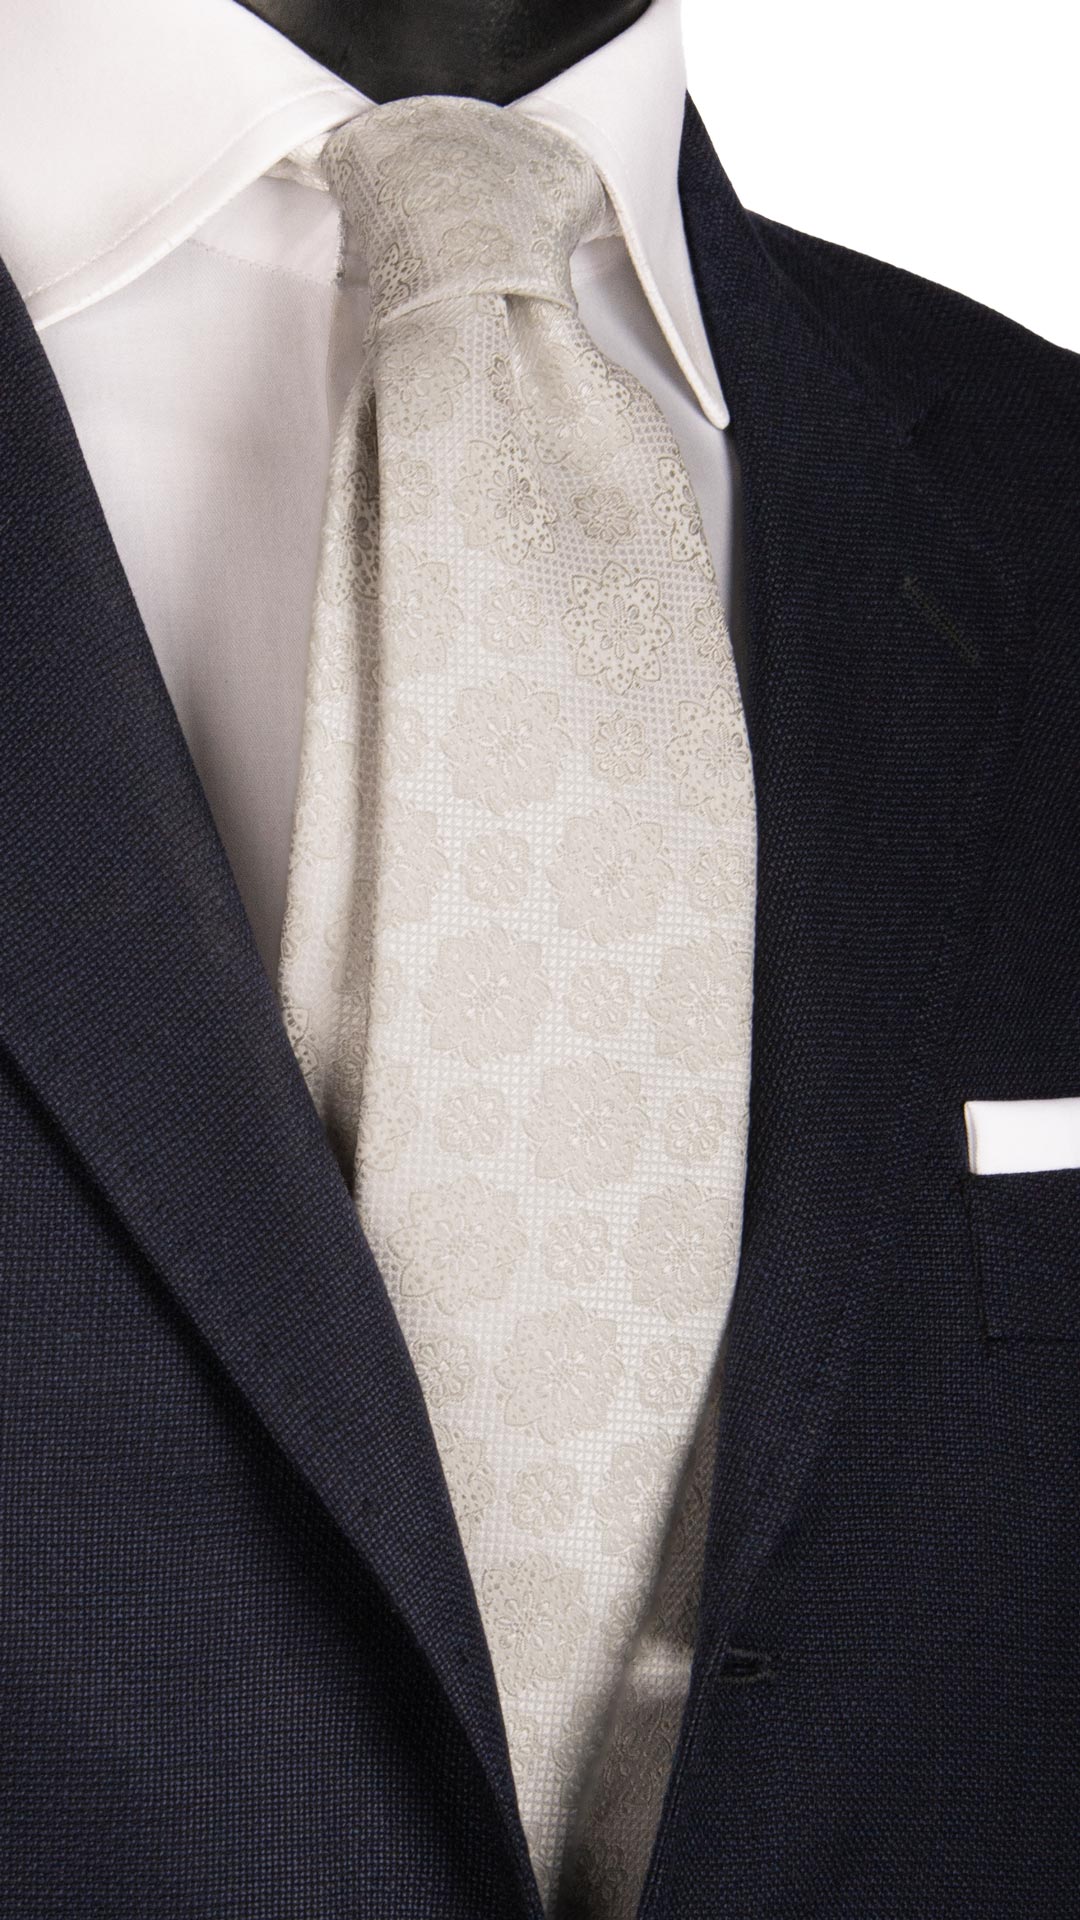 Cravatta da Cerimonia di Seta Bianco Perla a Medaglioni Grigio Argento CY6669 Made in Italy Graffeo Cravatte